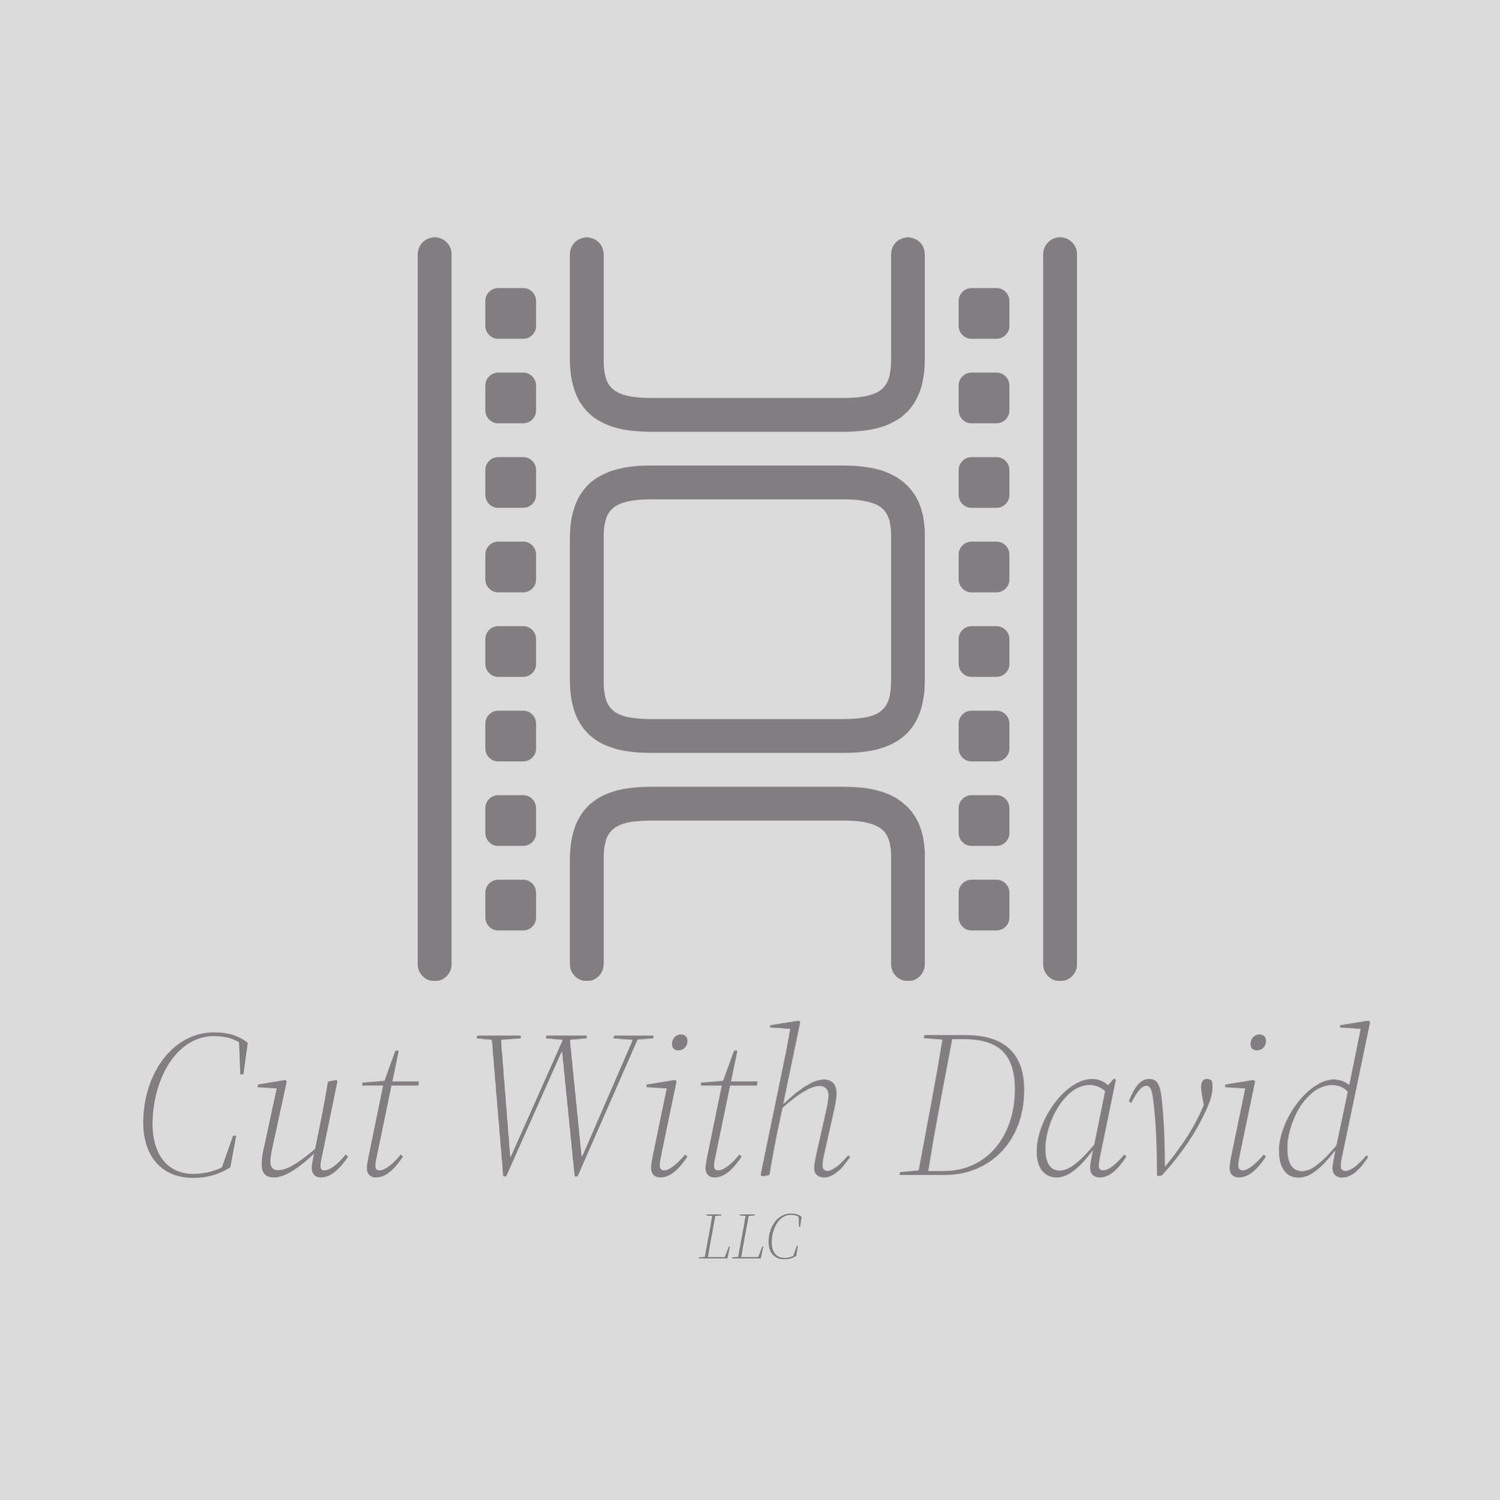 Cut with David LLC